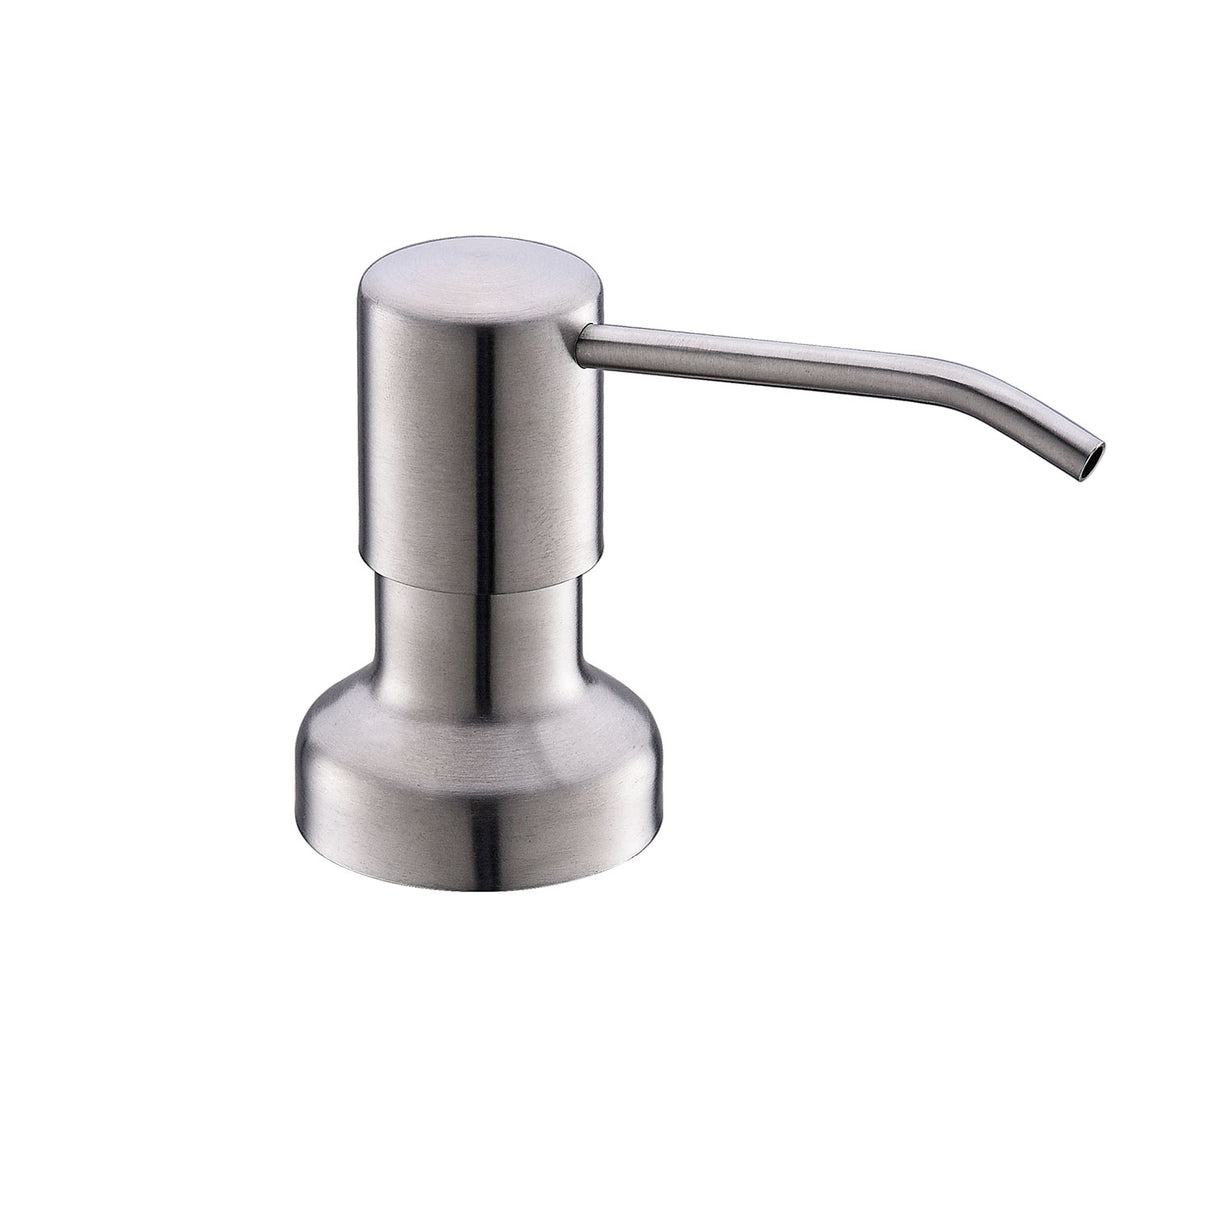 DAX Brass Round Soap Dispenser, Brushed Nickel DAX-1002-BN